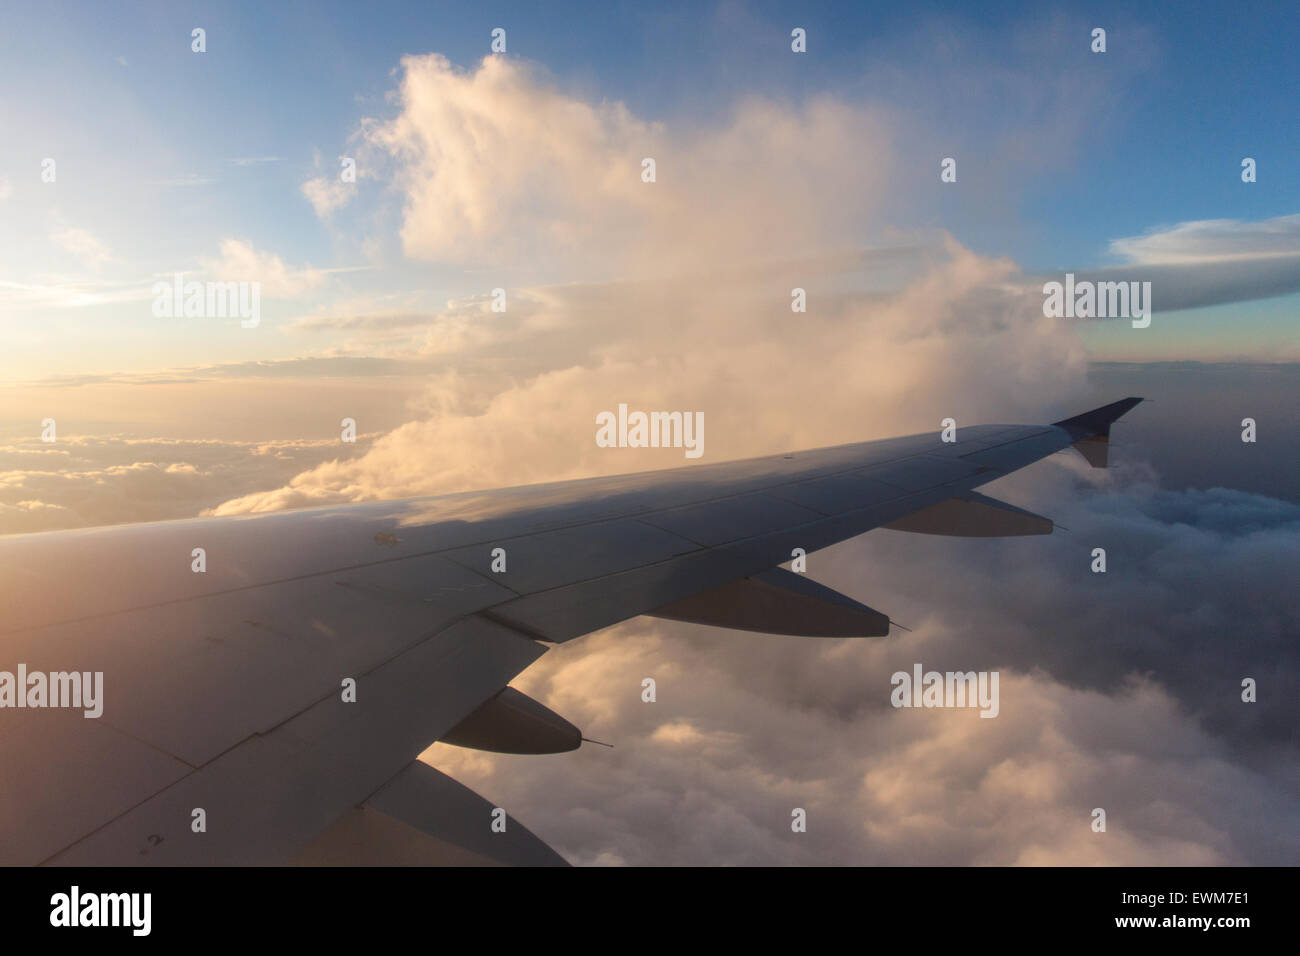 Die Sonne beleuchtet Wolken in der Nähe von einem Flugzeugflügel. Stockfoto